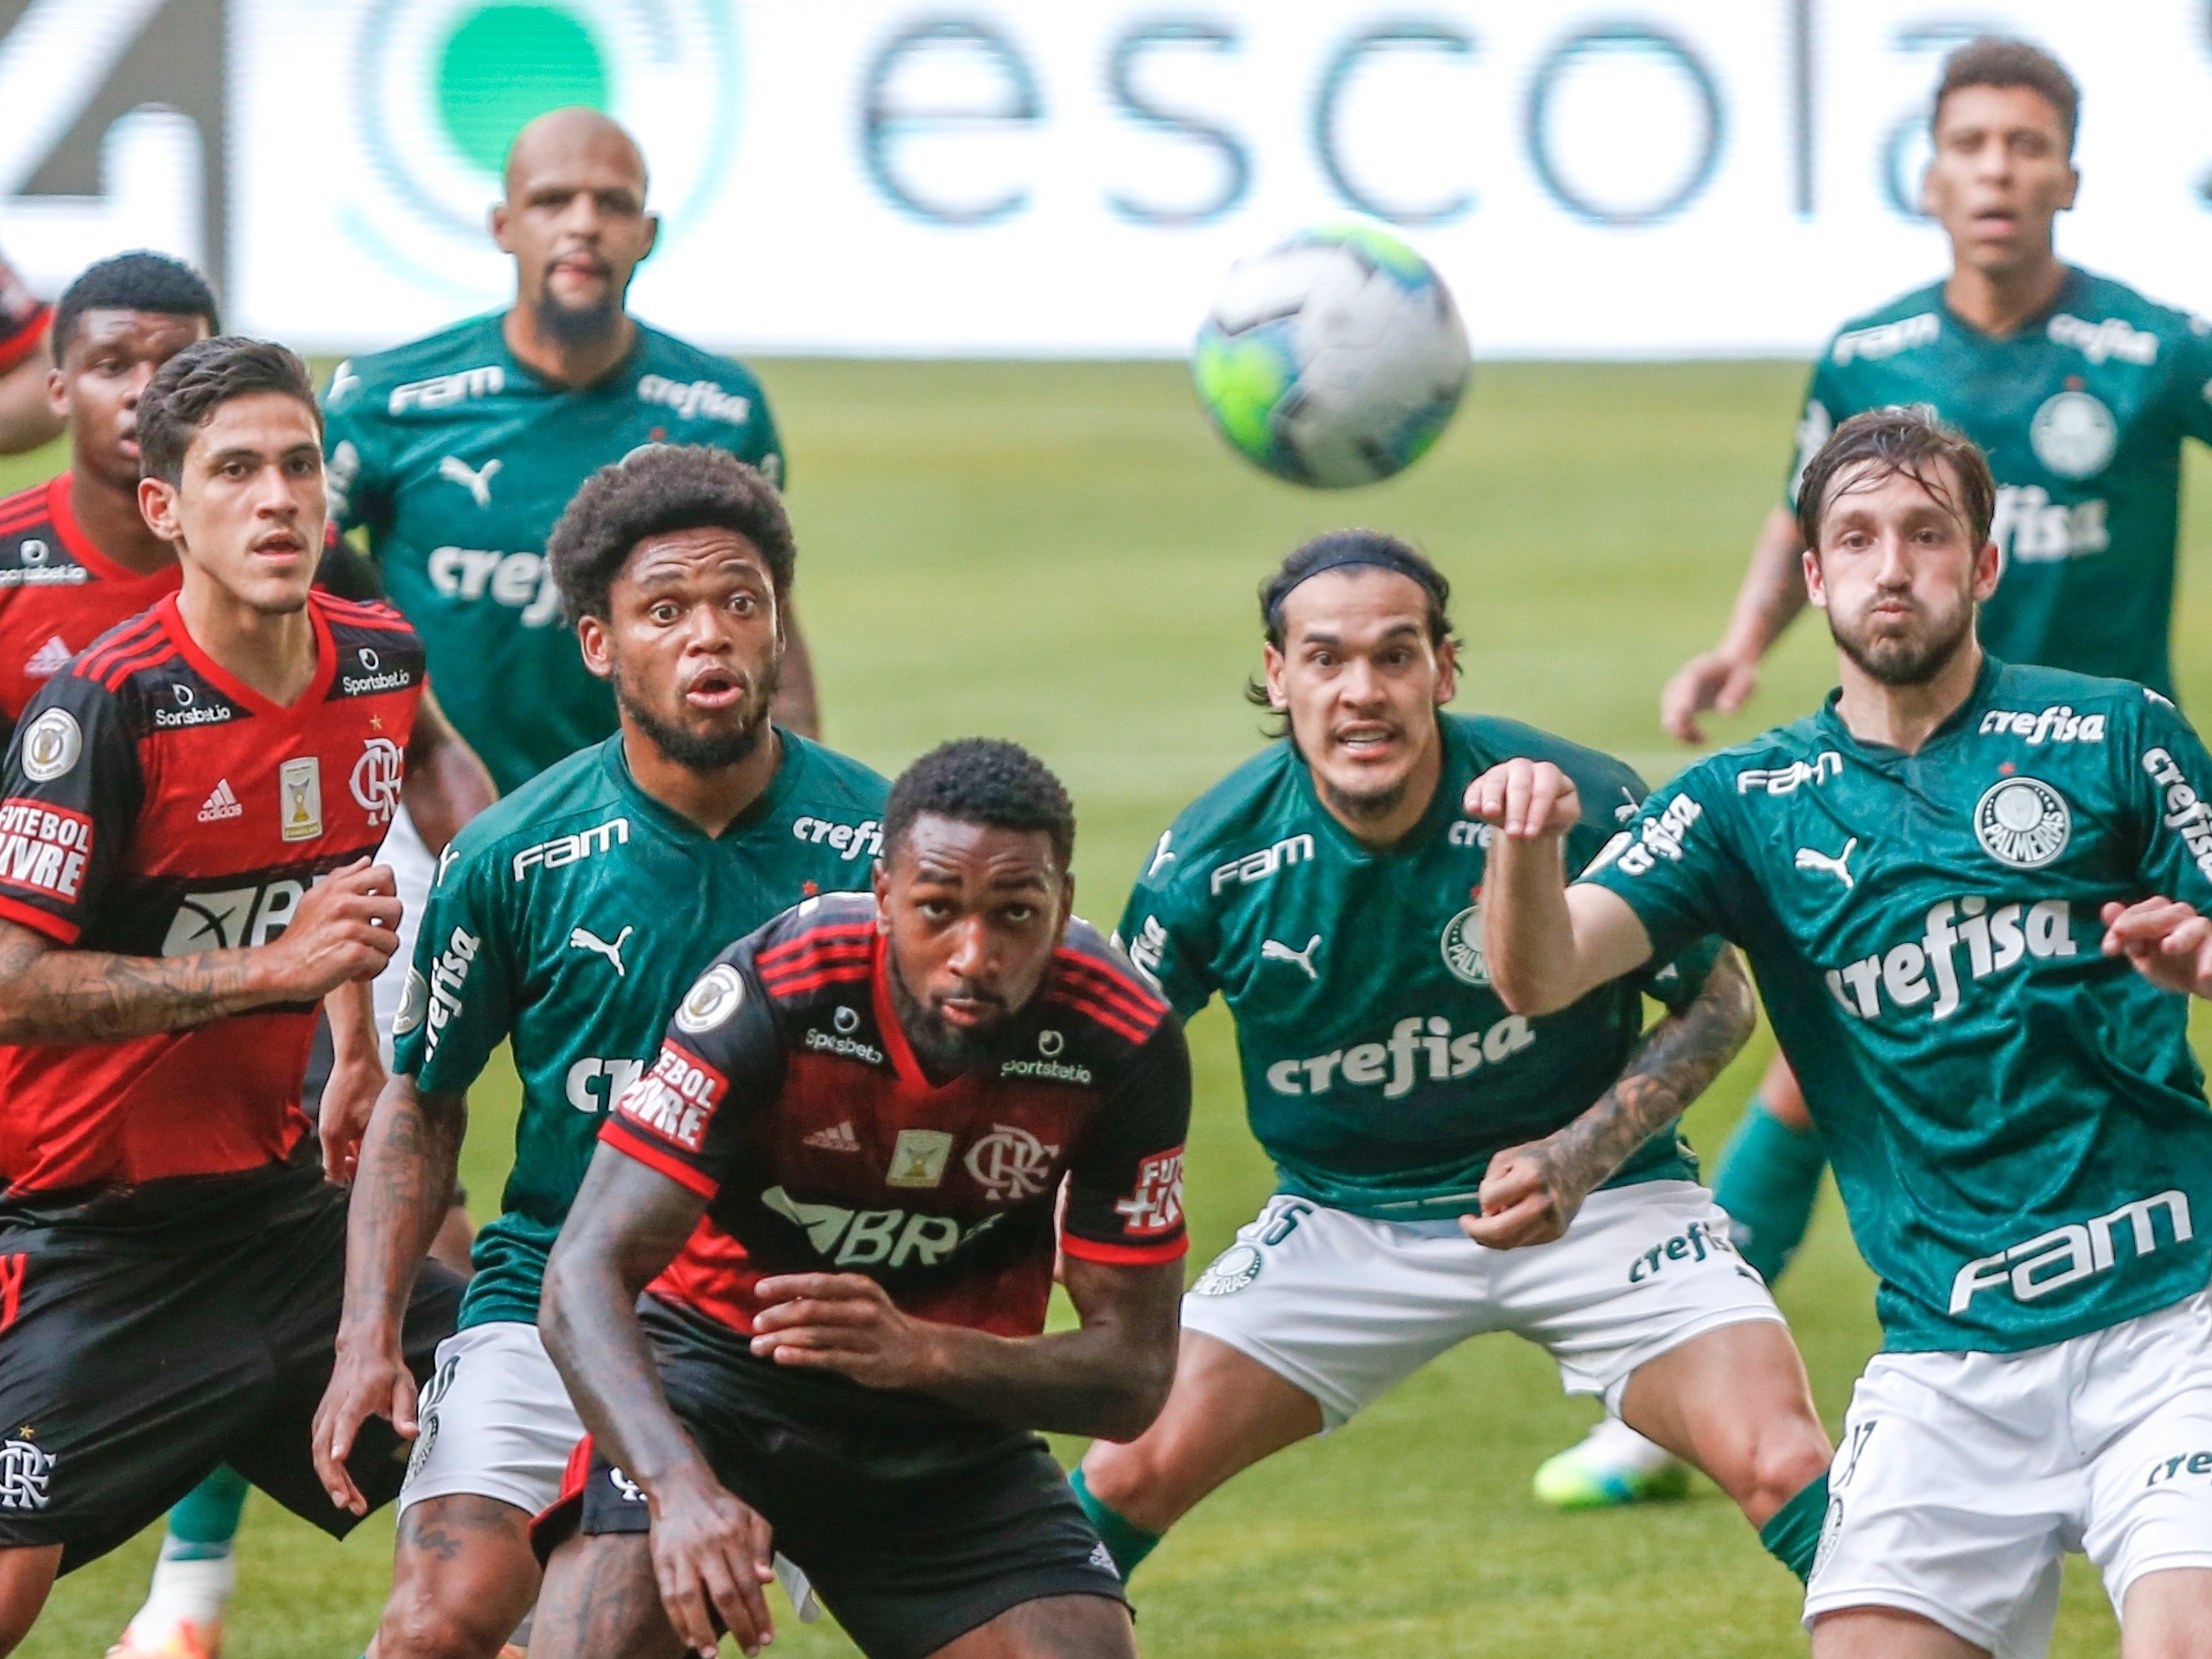 Goiás x Palmeiras - AO VIVO - 21/11/2020 - Brasileirão 